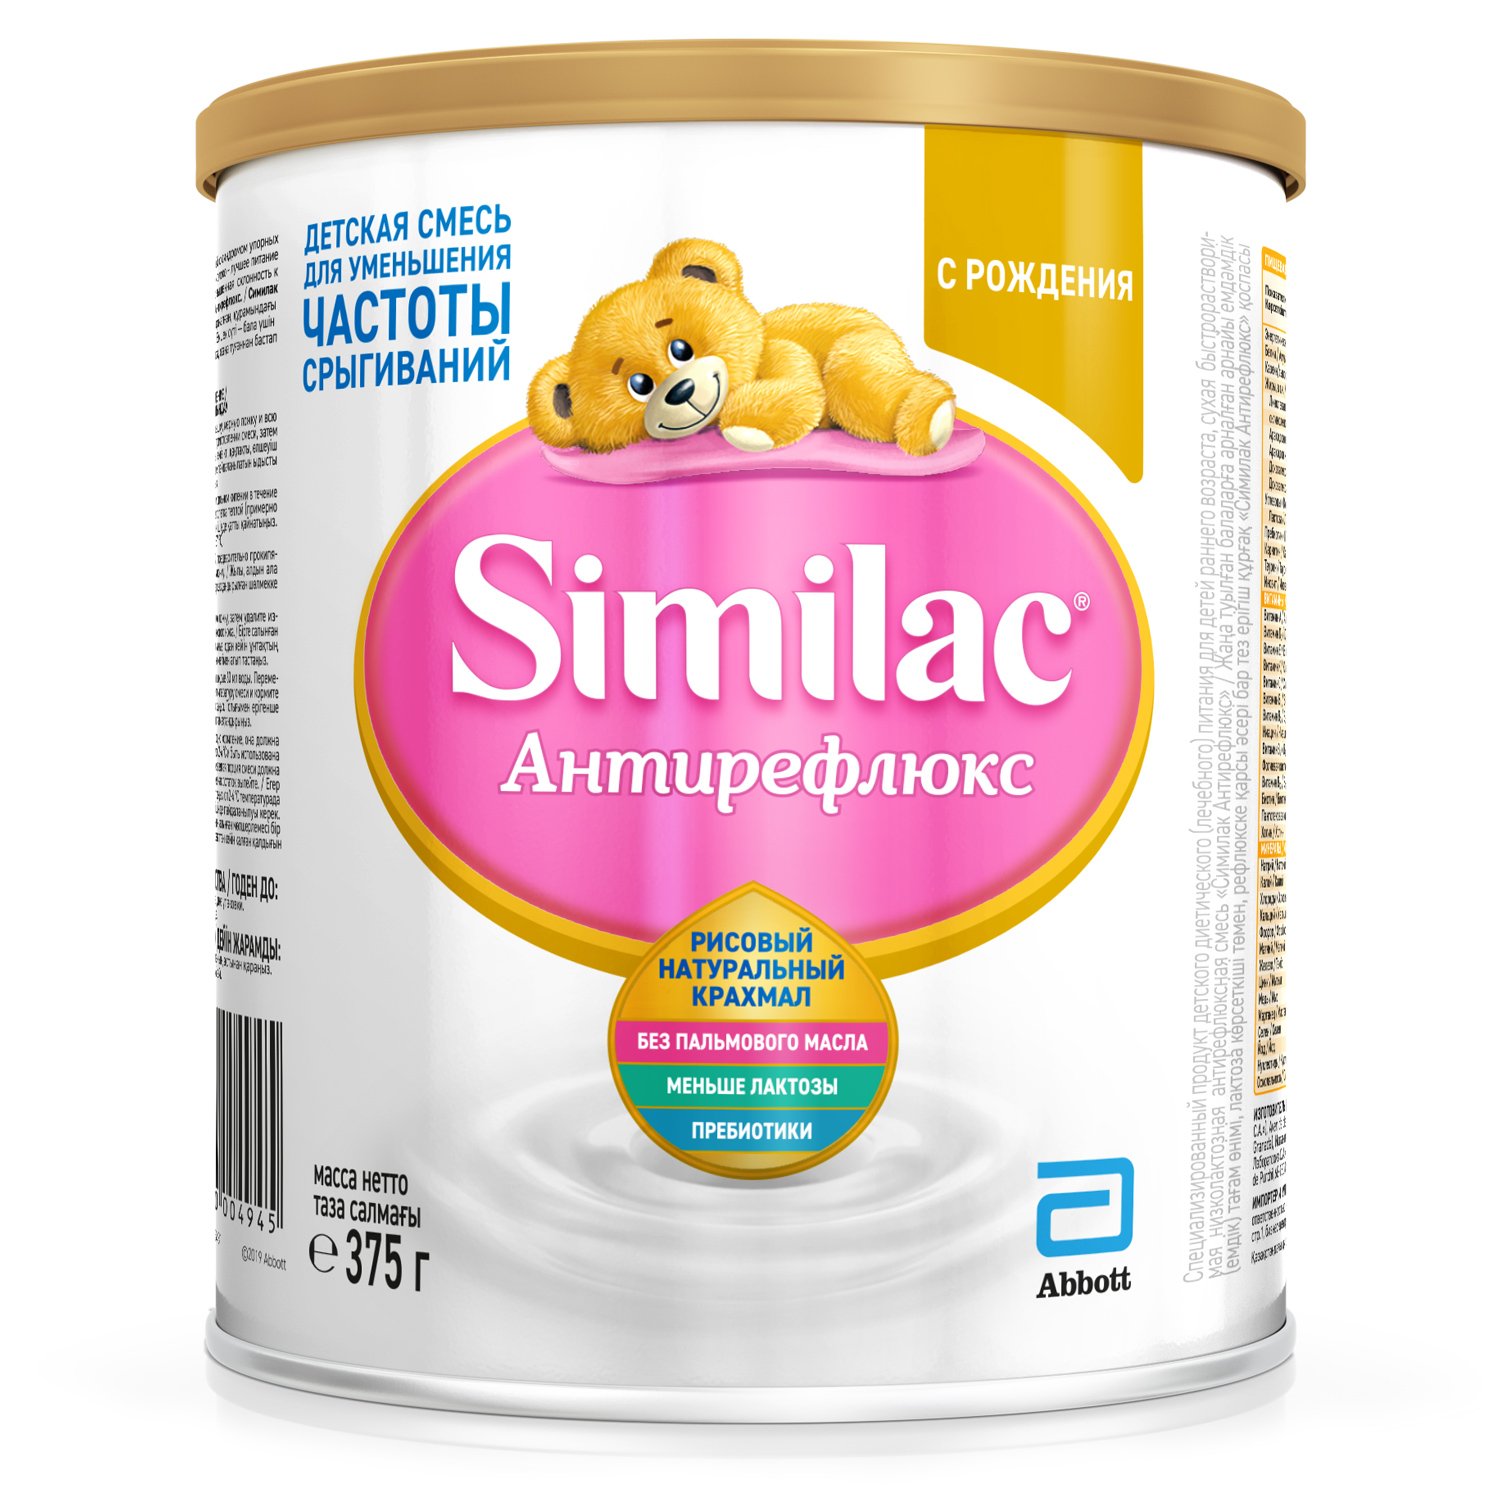 Сухая молочная смесь Similac Антирефлюкс, 375 г - фото 1